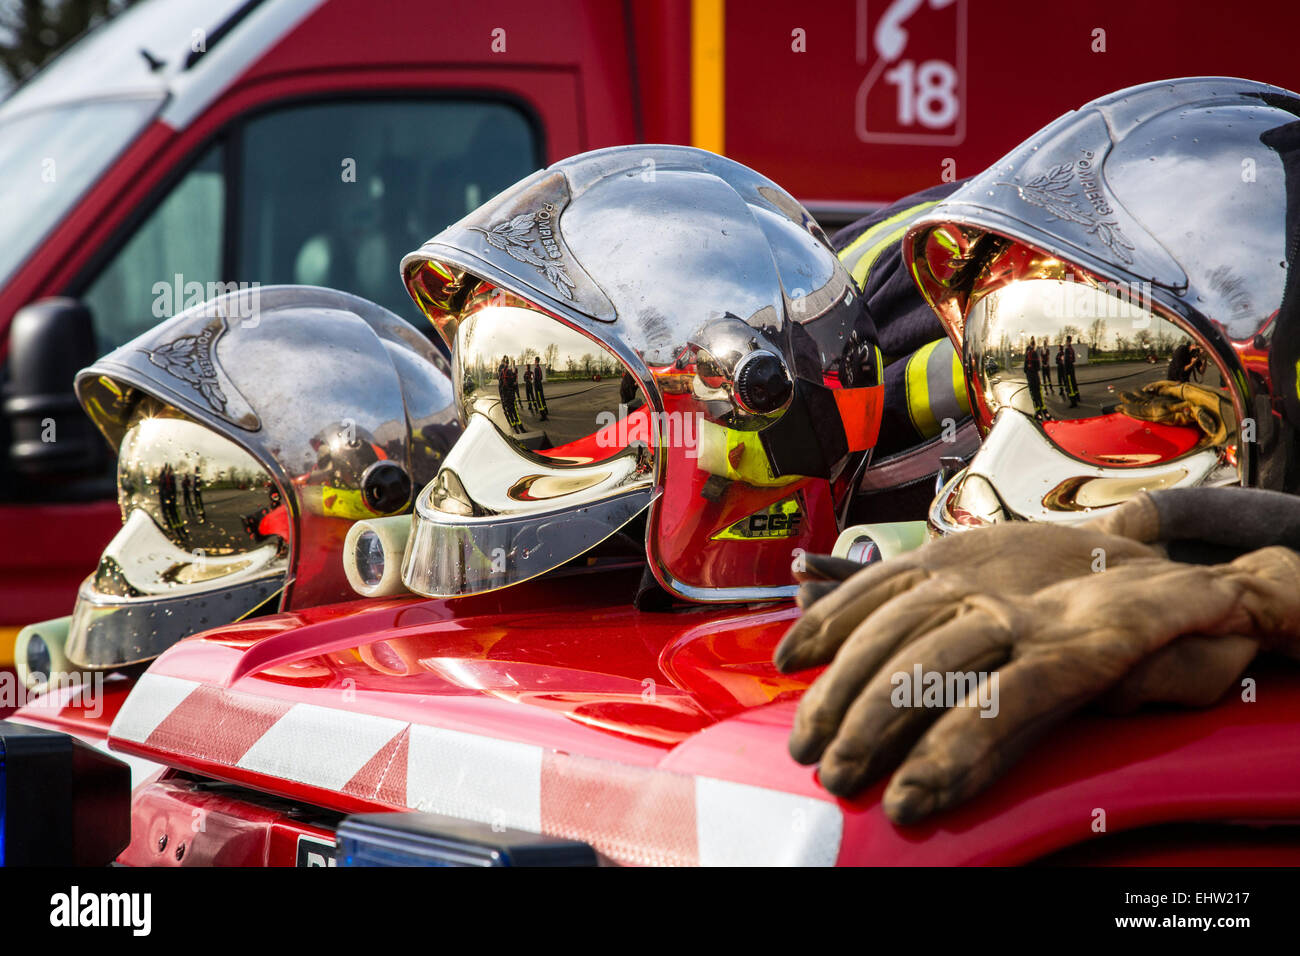 Les pompiers de RUGLES, FRANCE Banque D'Images